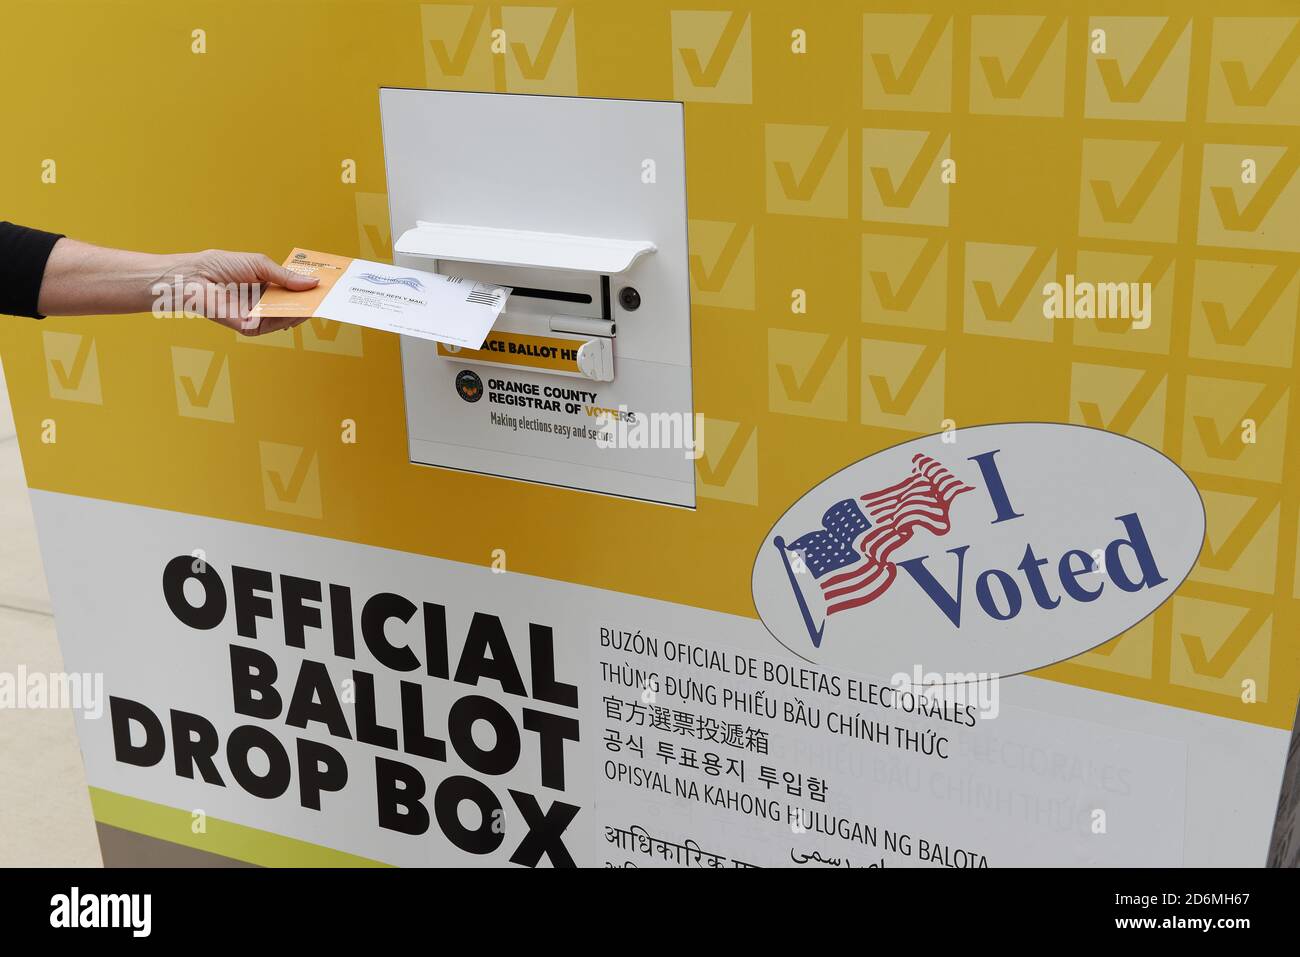 IRVINE, KALIFORNIEN - 18 Okt 2020: Frau, die in einer offiziellen Wahlurne in Orange County, Kalifornien, Post in den Stimmzettel legt. Stockfoto